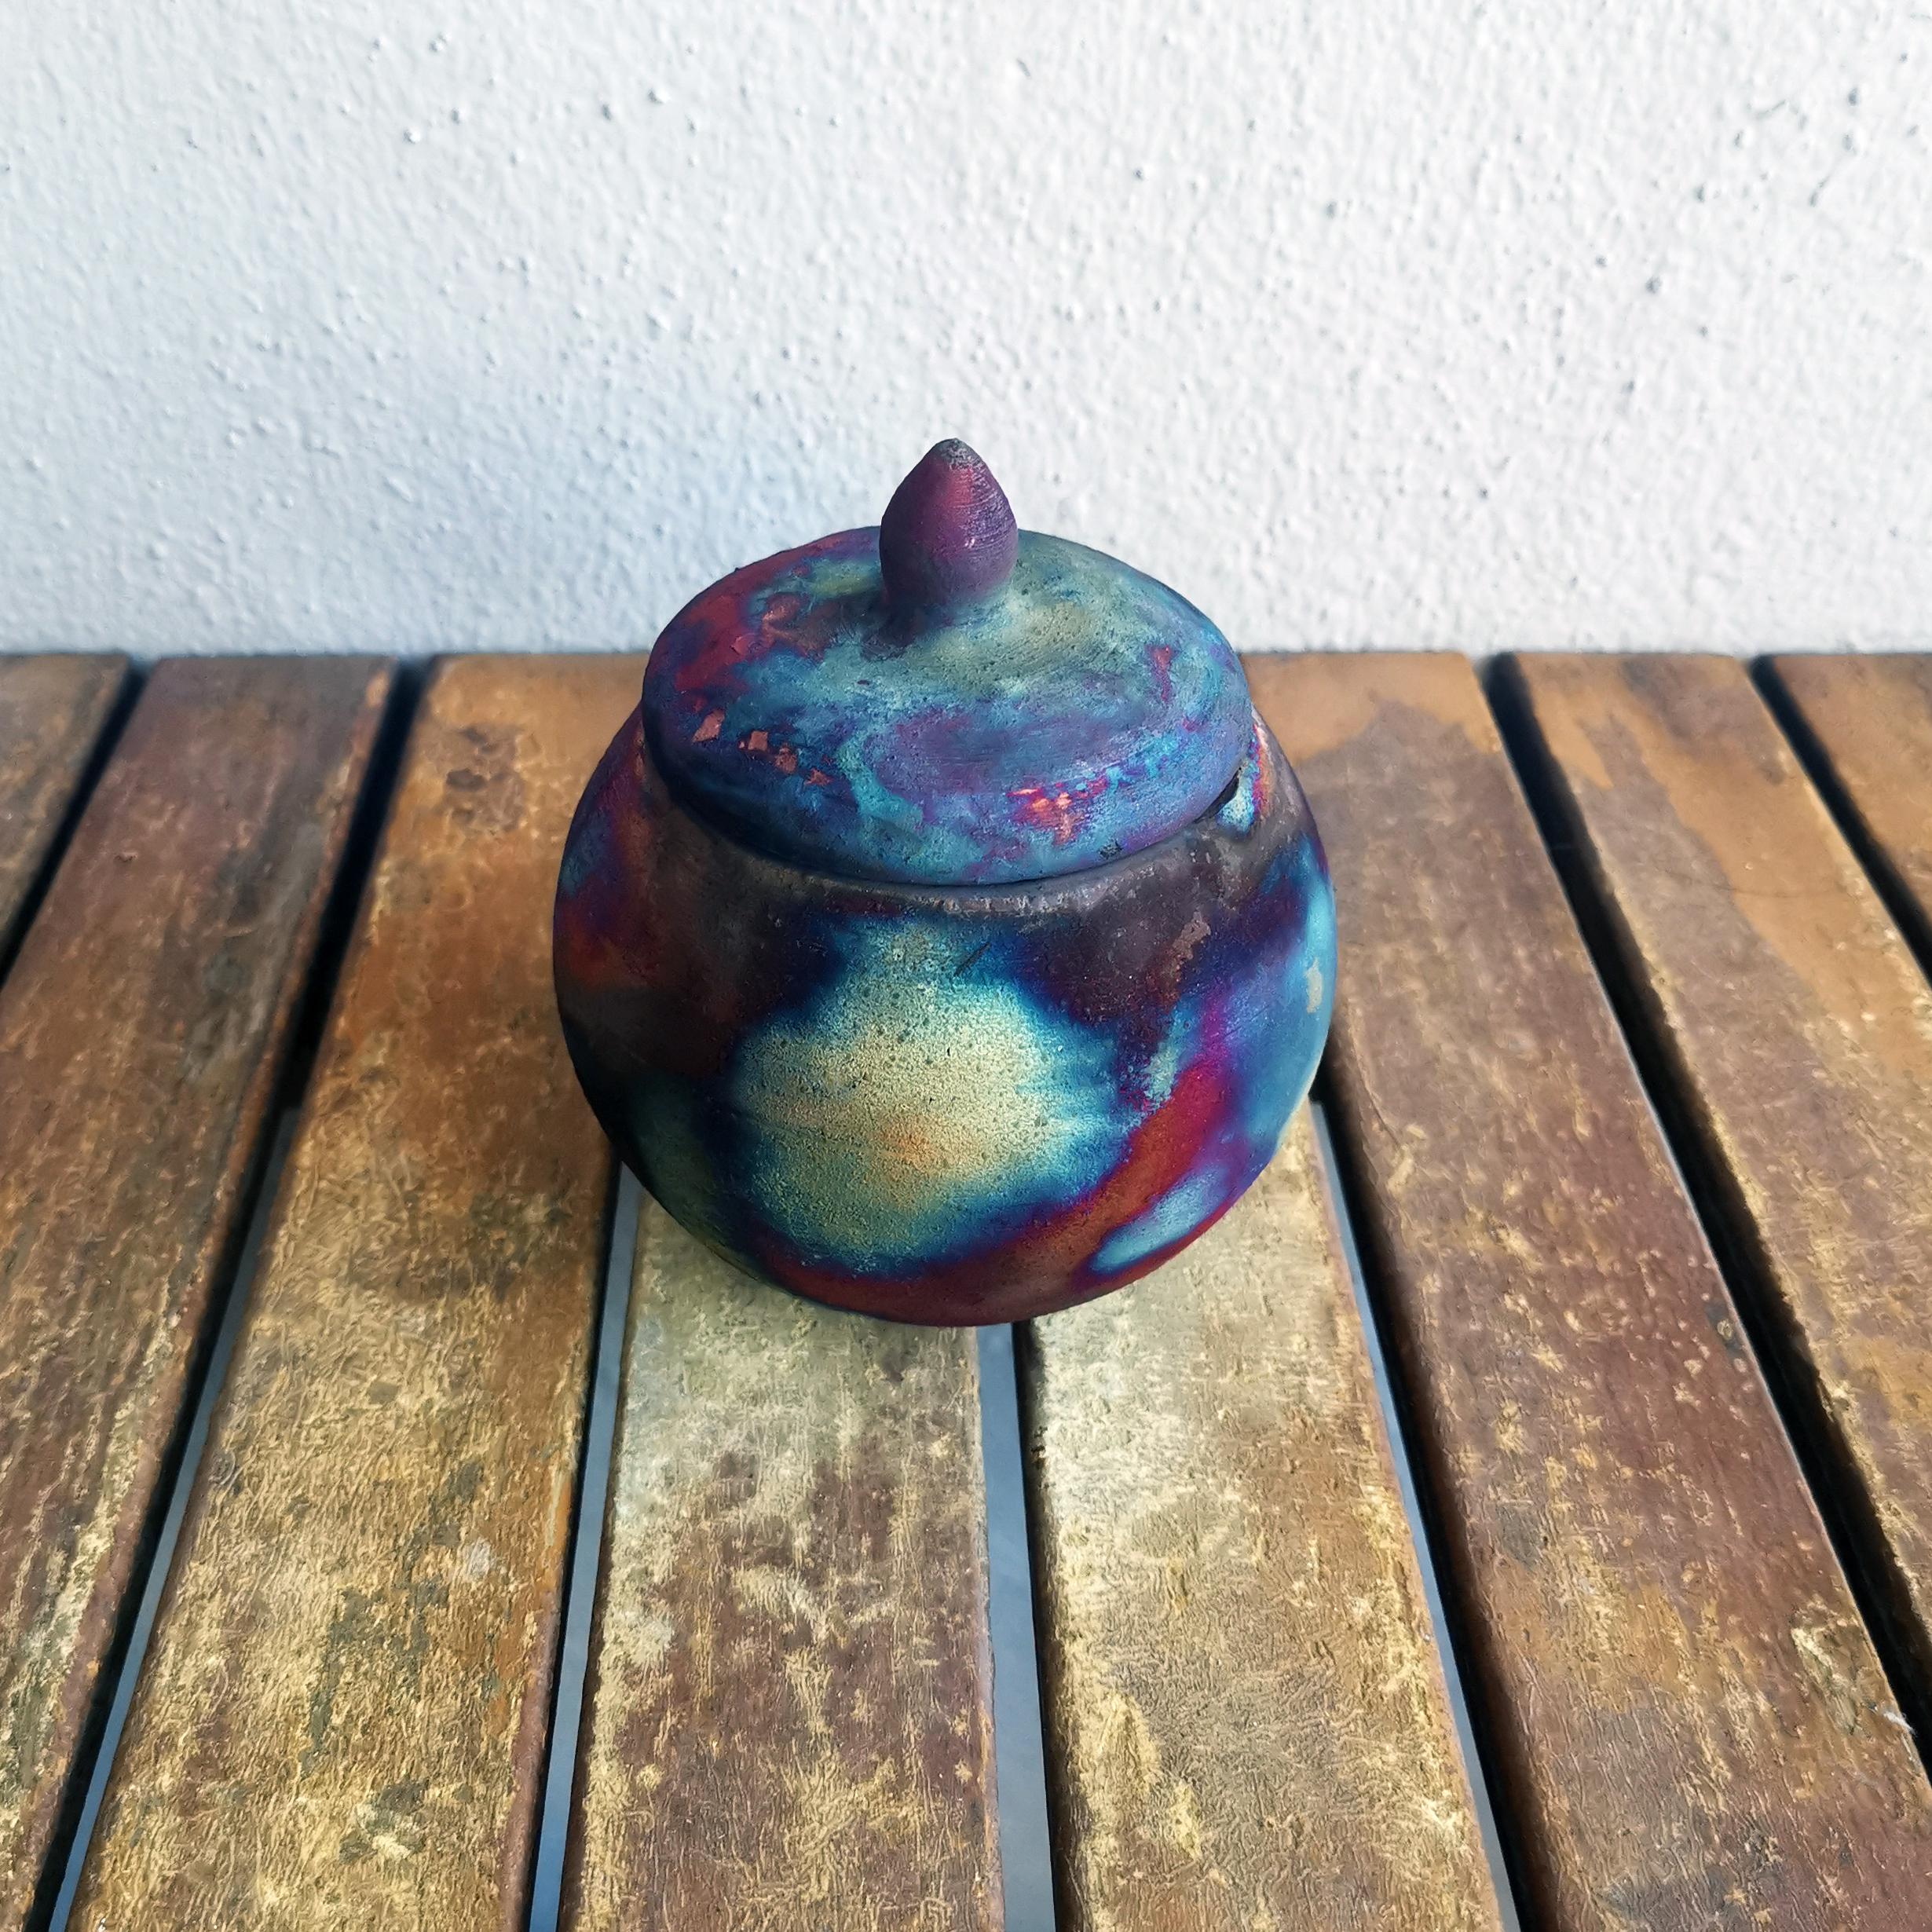 Kioku - Souvenir  

L'urne Kioku est une petite urne de la taille d'une paume de main qui est formée avec une forme sphérique organique. Cette urne convient parfaitement pour les dépouilles d'animaux de compagnie ou pour une commémoration partagée